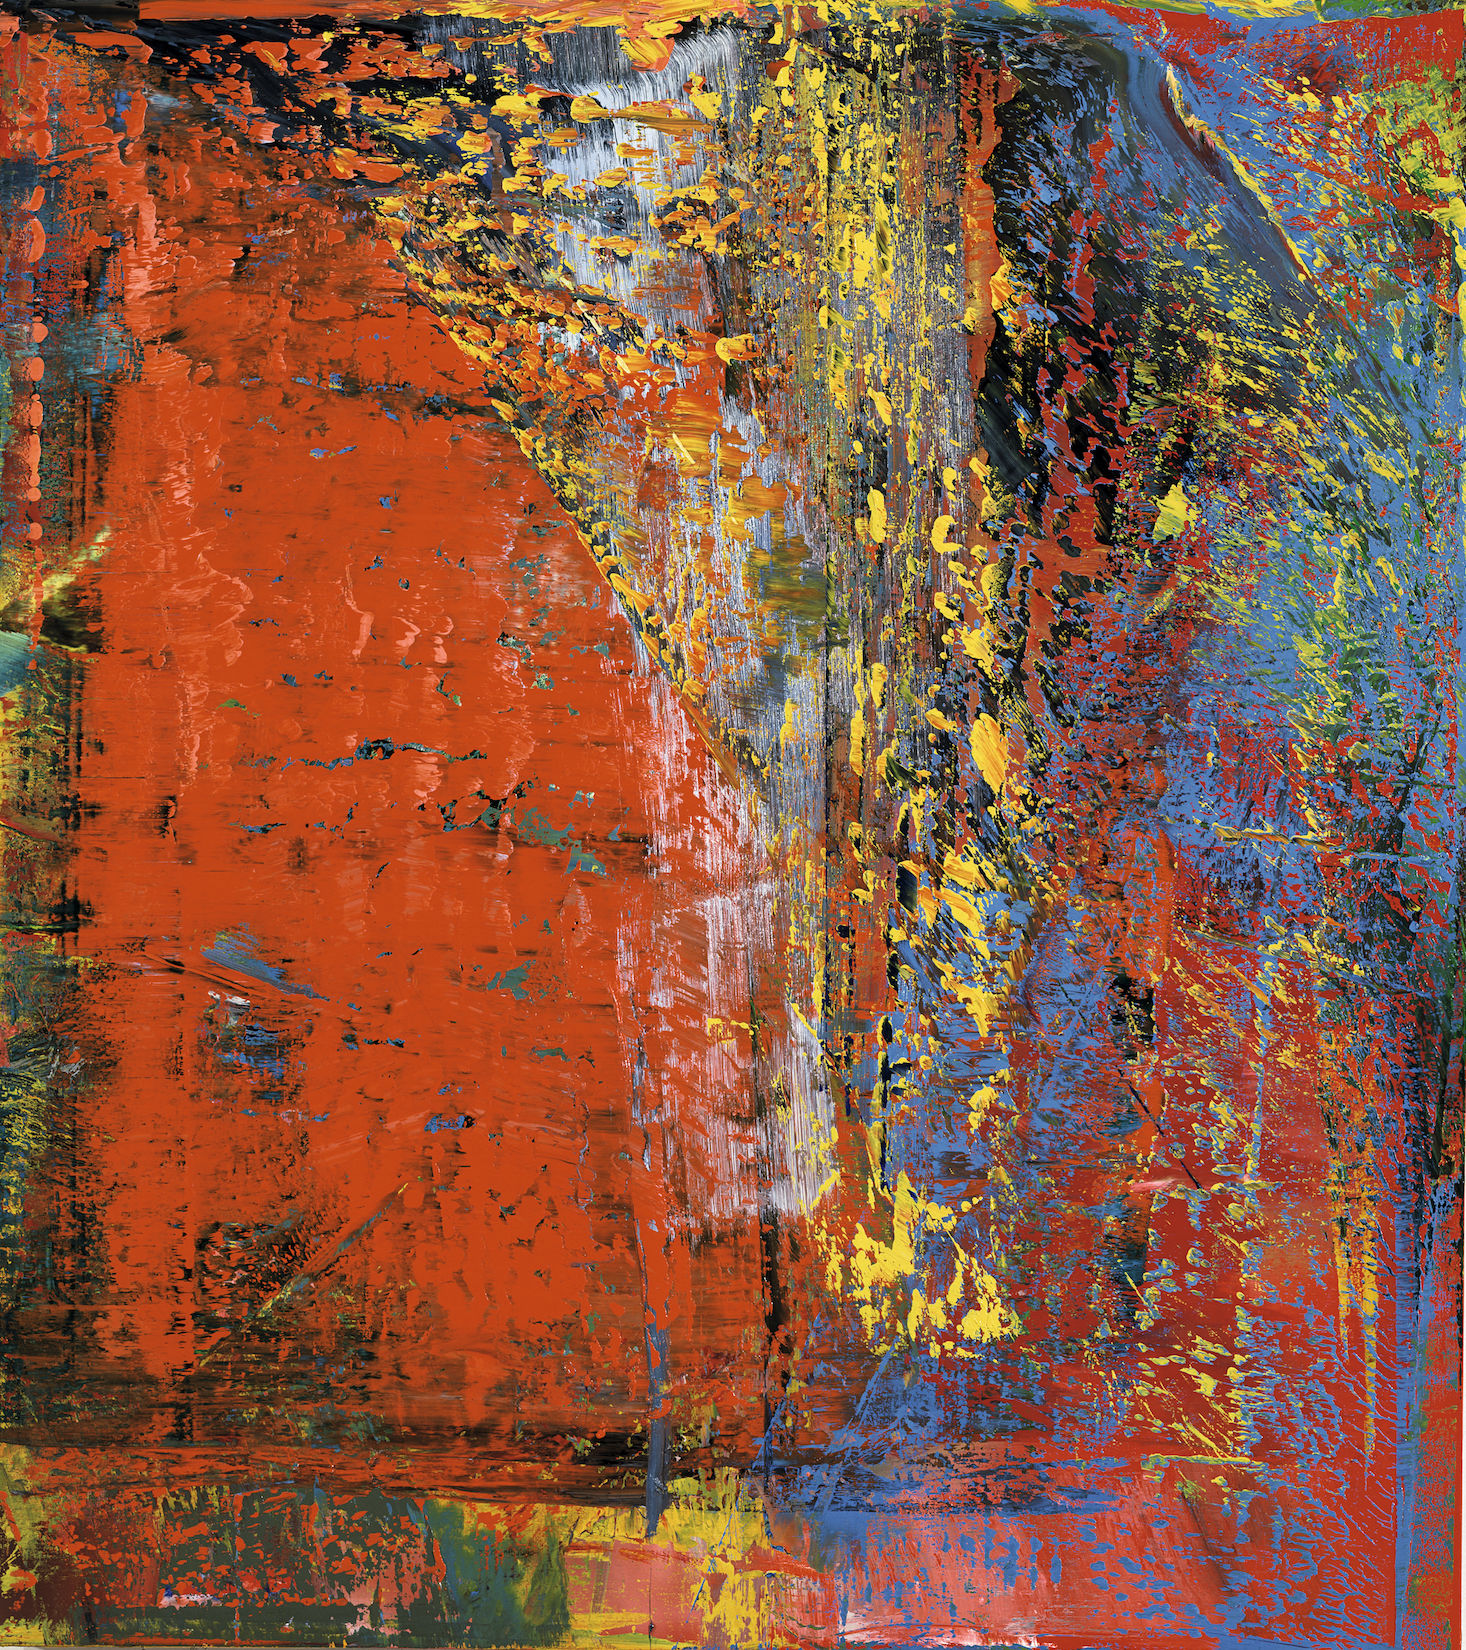 Gerhard Richter: A B, Still, 1986, Museum Barberini © Gerhard Richter 2018 (29062018)